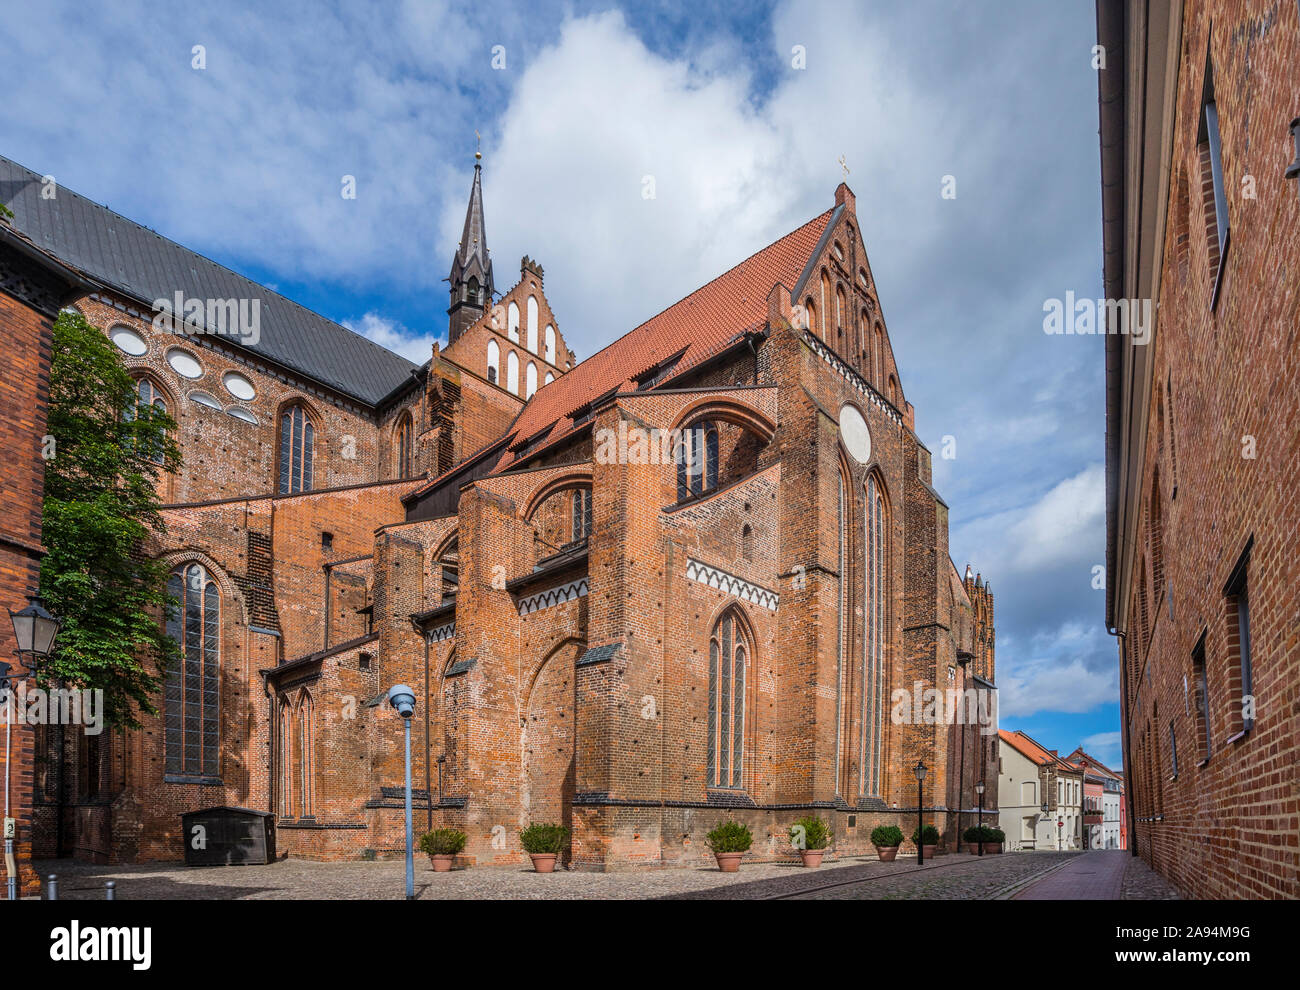 Vue sur le transept sud et le choeur St George's Church Wismar, une architecture gothique en brique médiévale reconstruite, ce qui était dommage substancially Banque D'Images